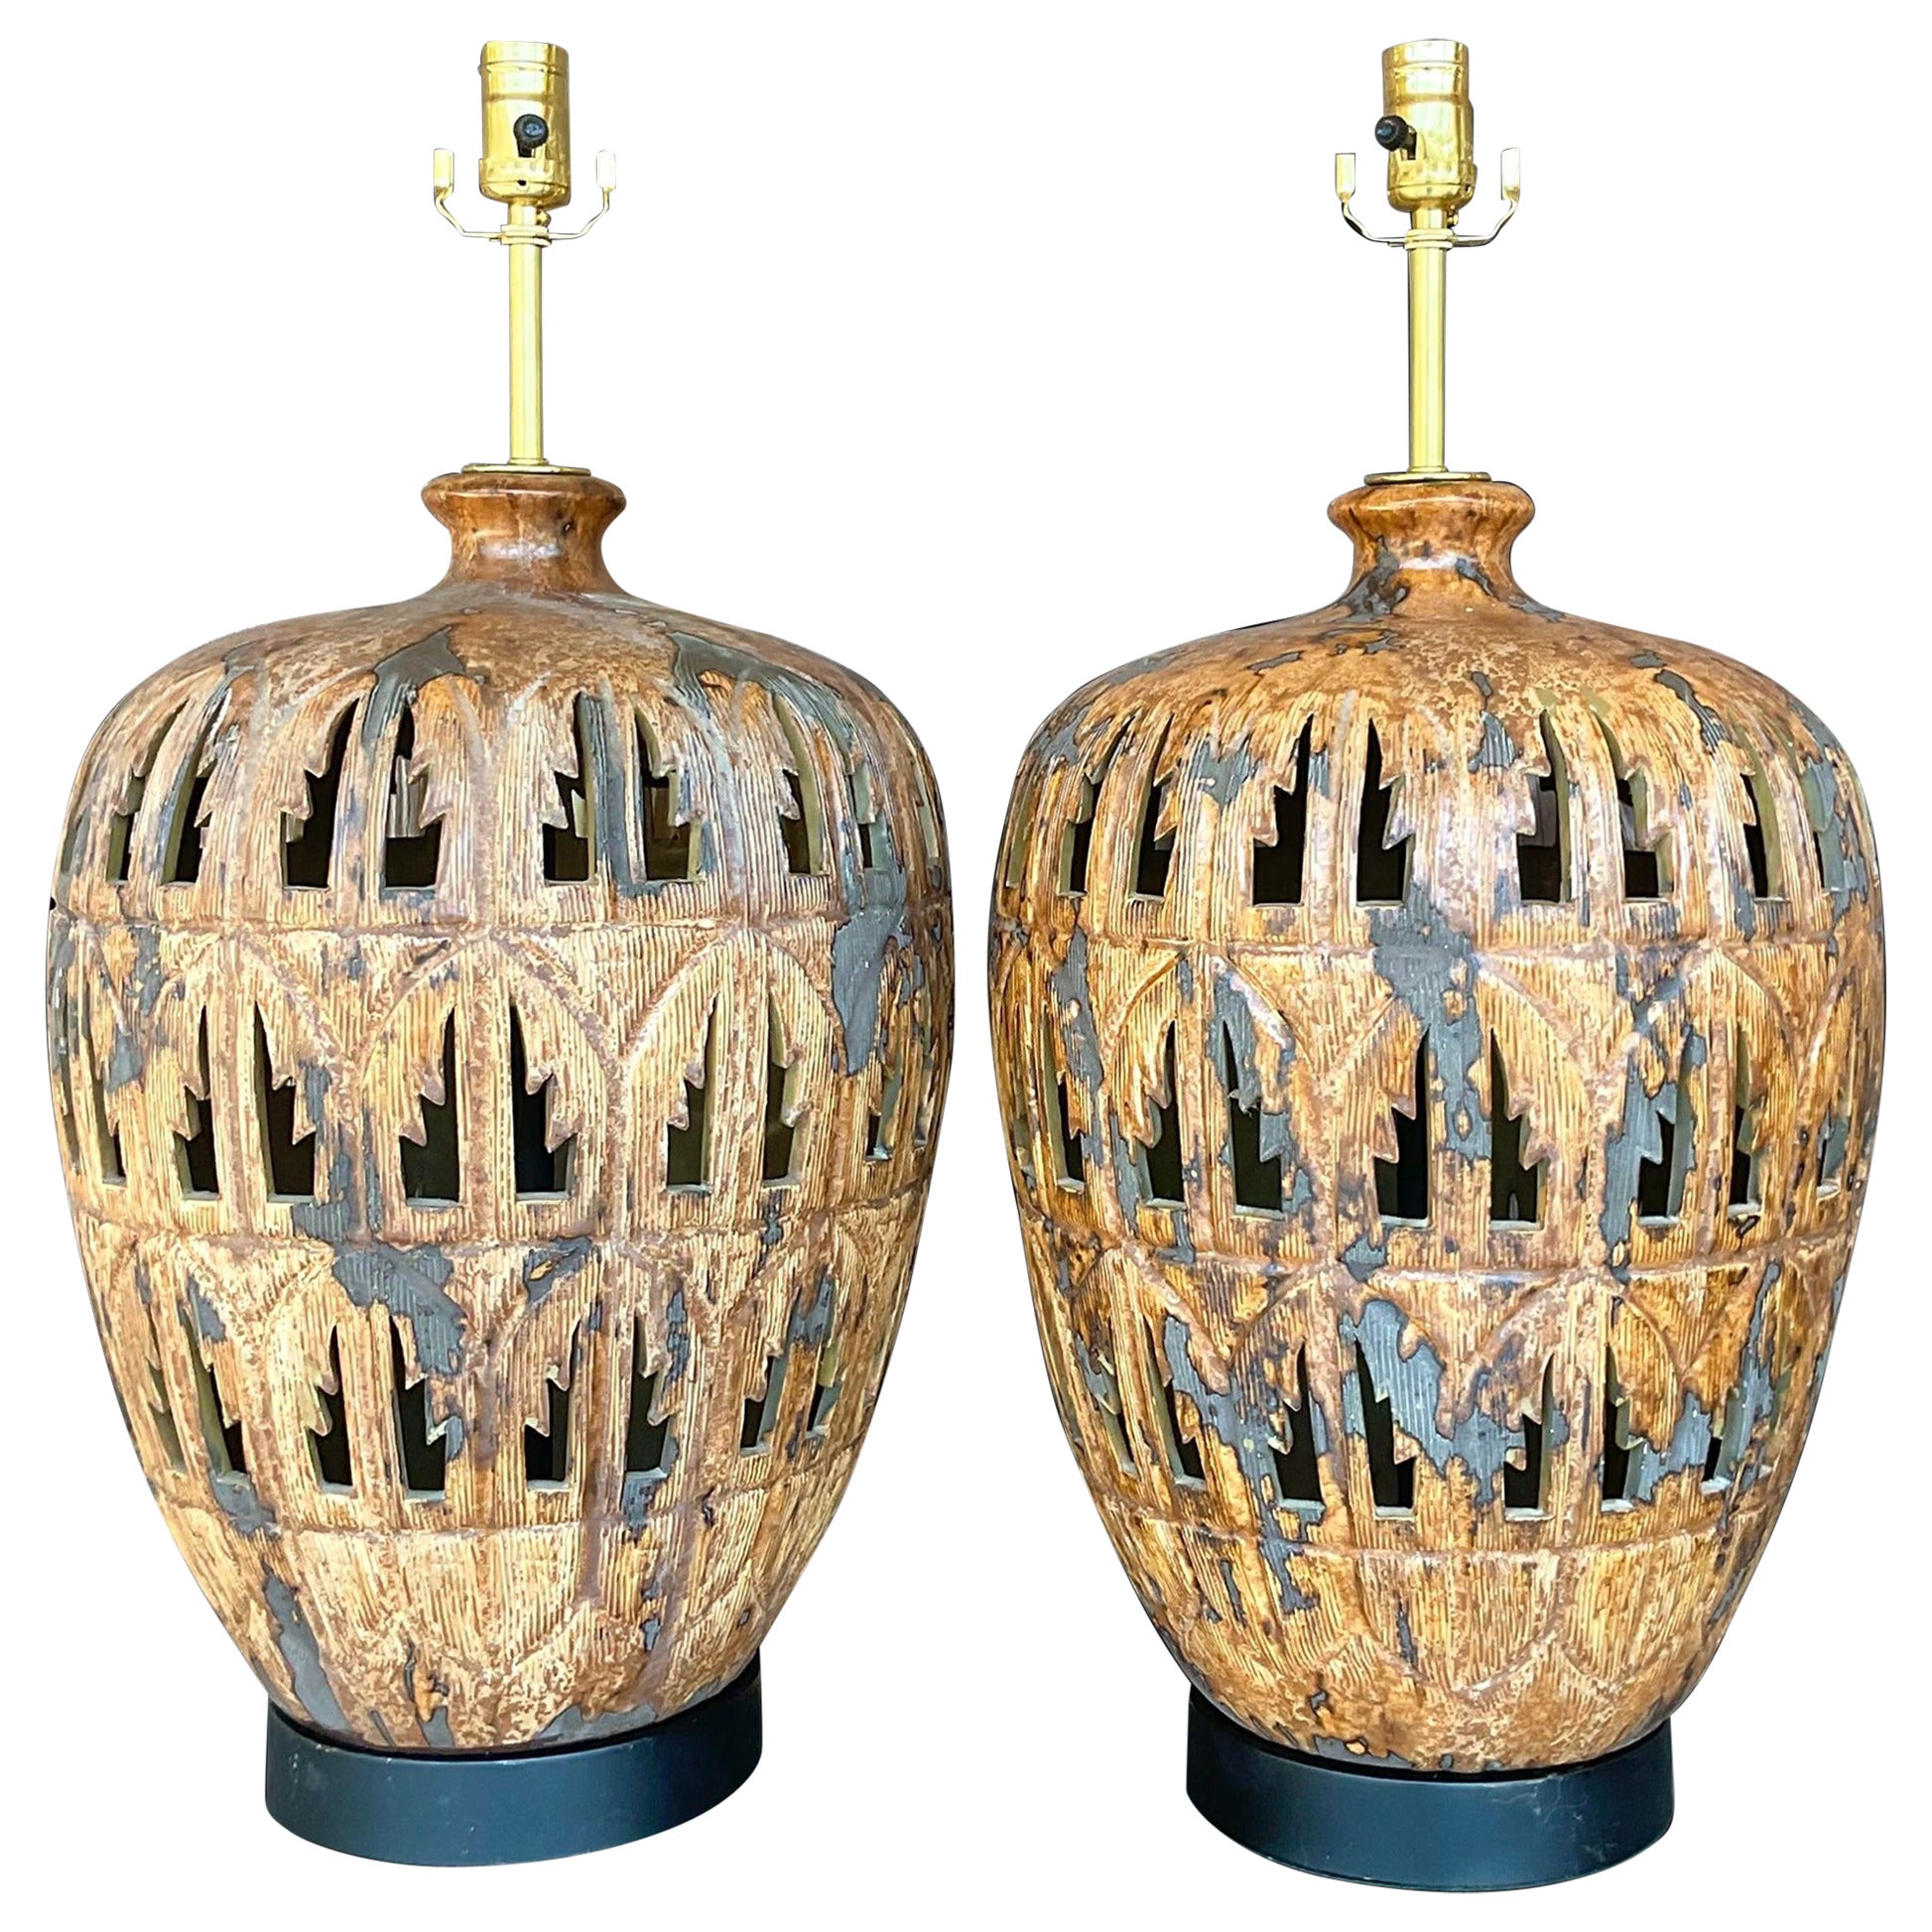 Paire de lampes de table Boho en céramique avec feuilles de palmier coupées à l'emporte-pièce